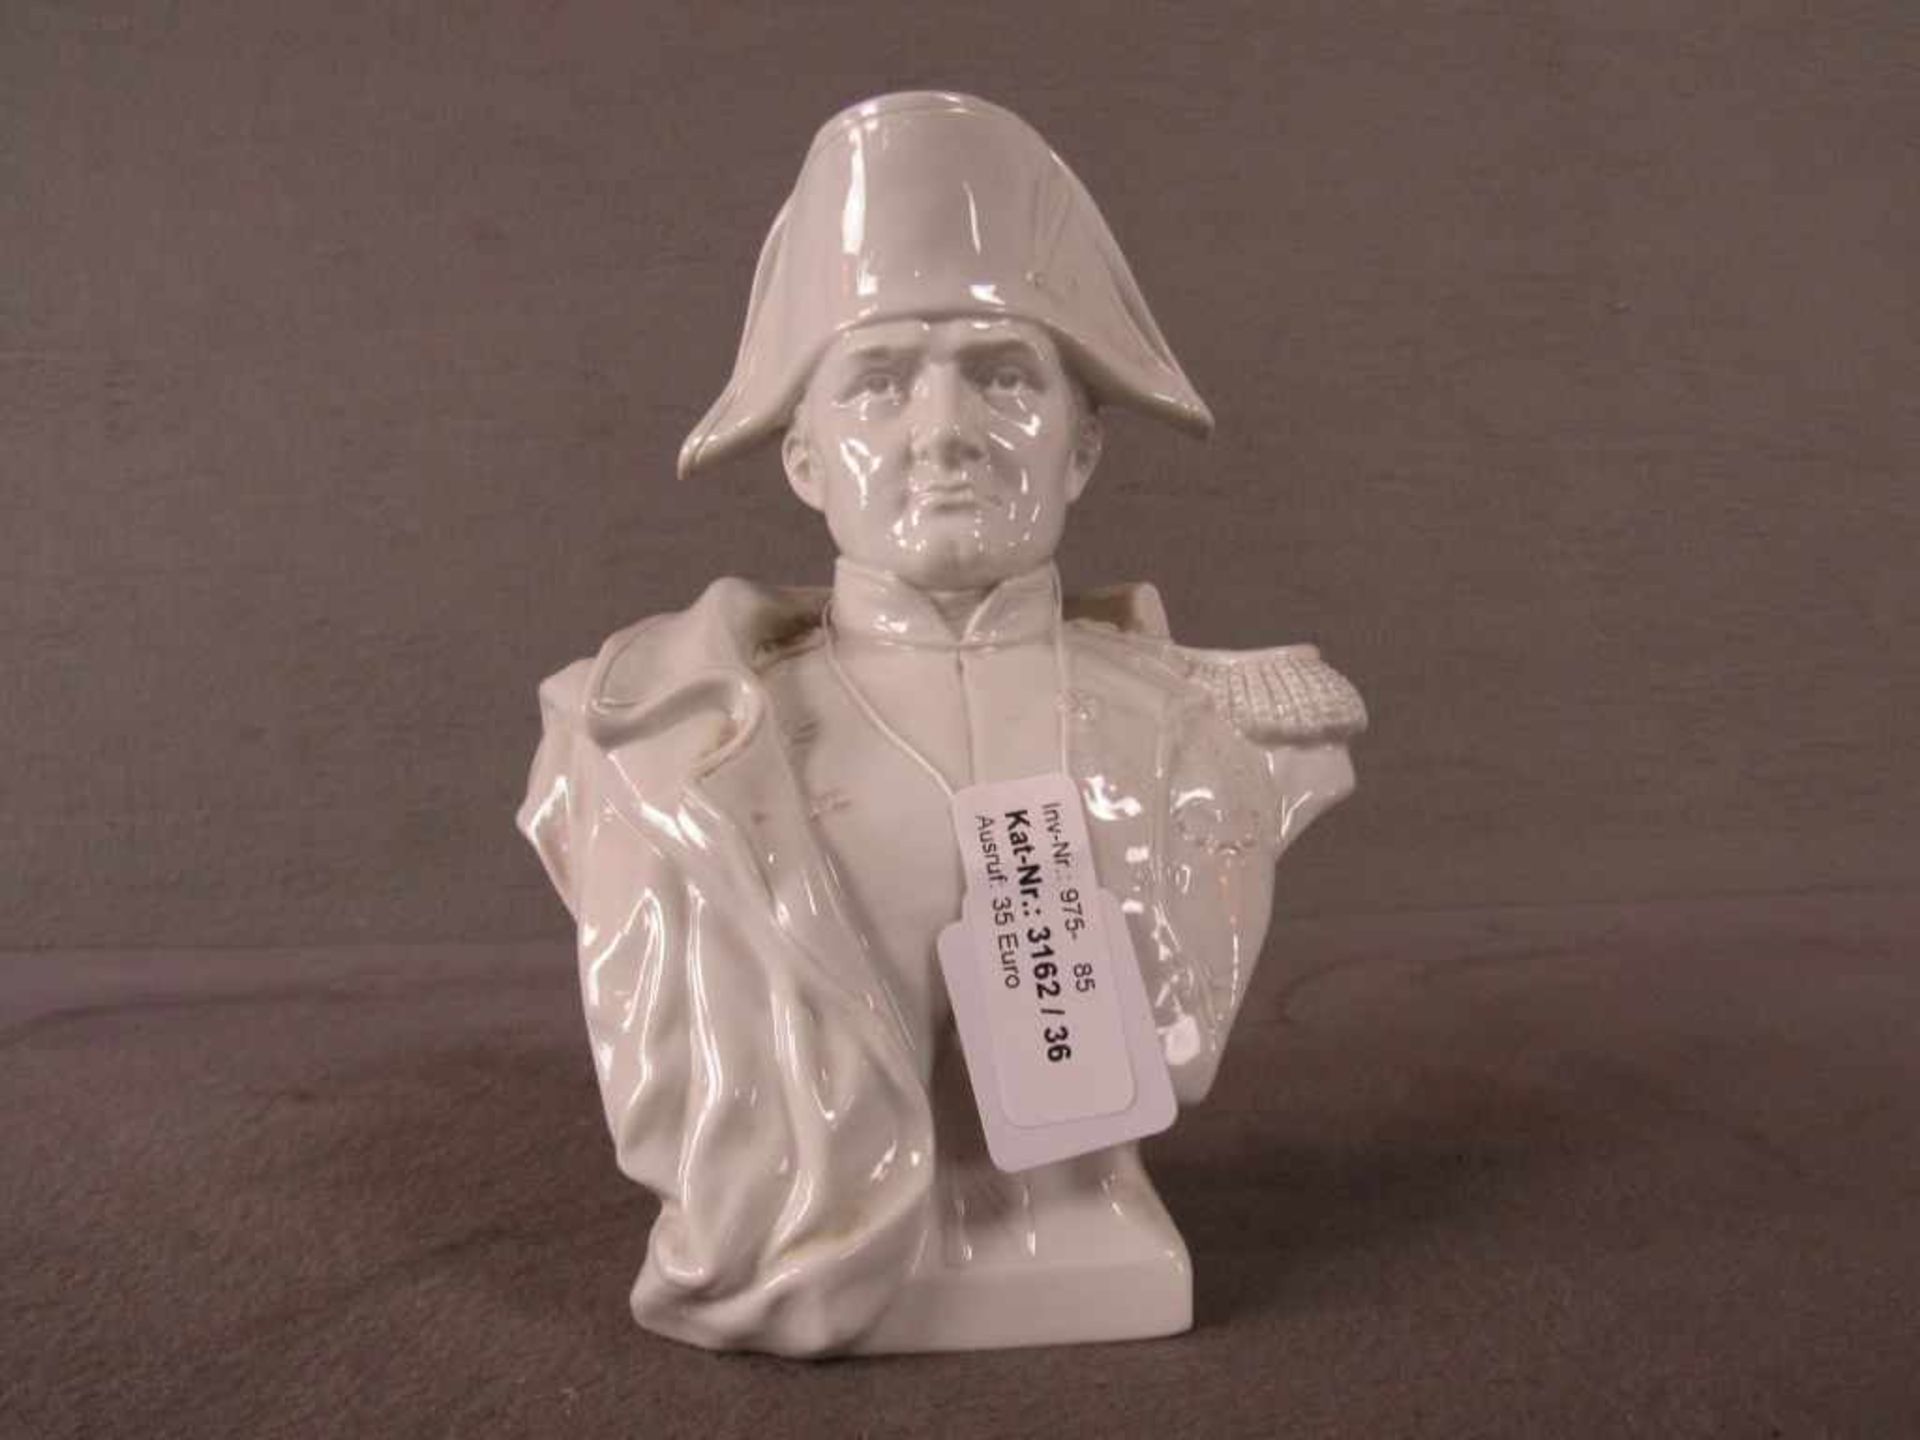 Porzellanskulptur Napoleon sehr fein gegossen gemarkt mit 2 Pfeilen und j oder ähnlich 21cm hoch